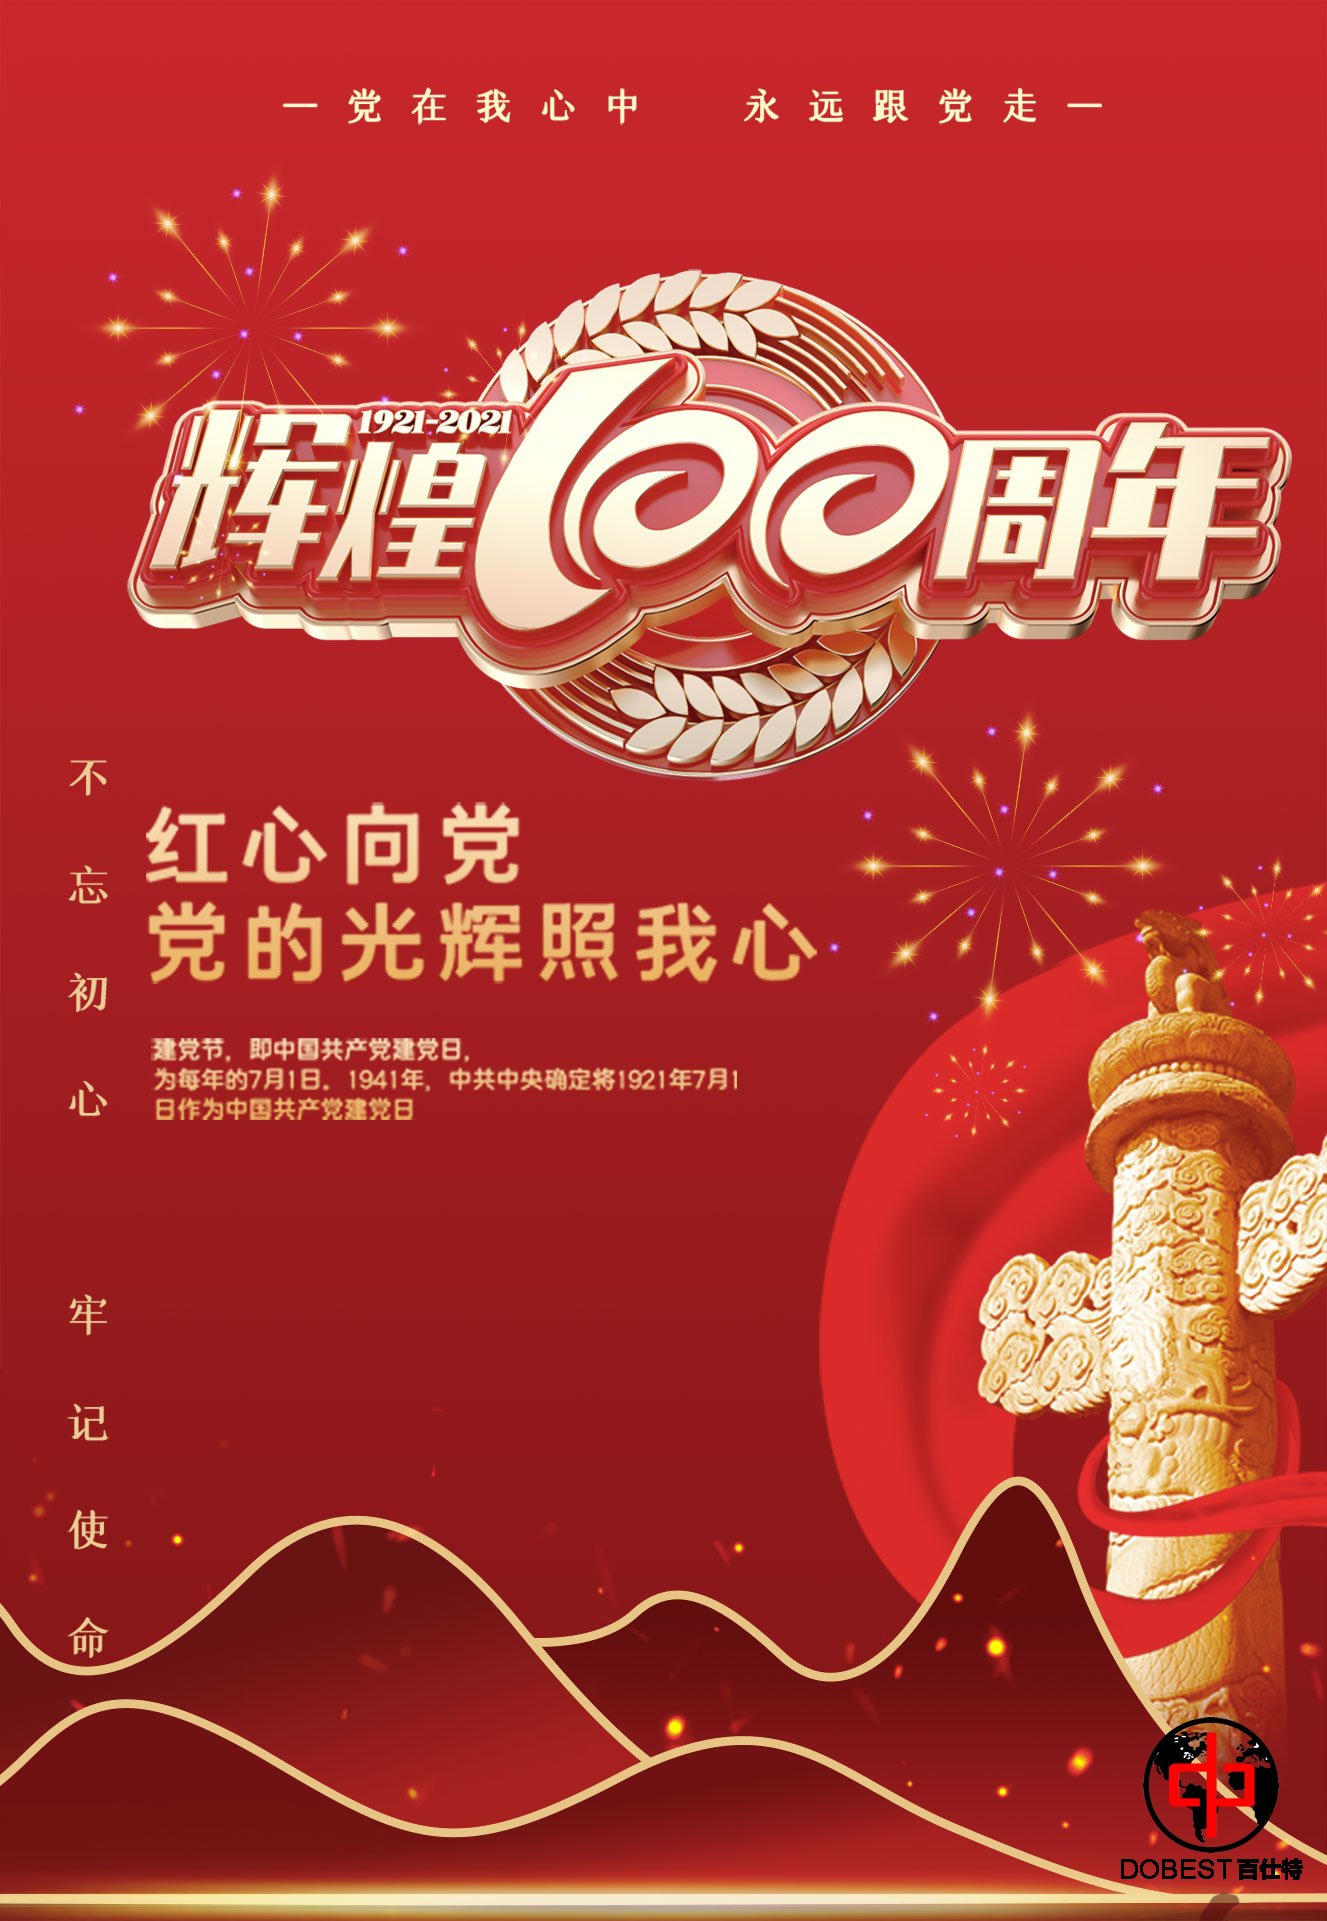 热烈庆祝中国共产党成立100周年-百仕特网络科技有限公司